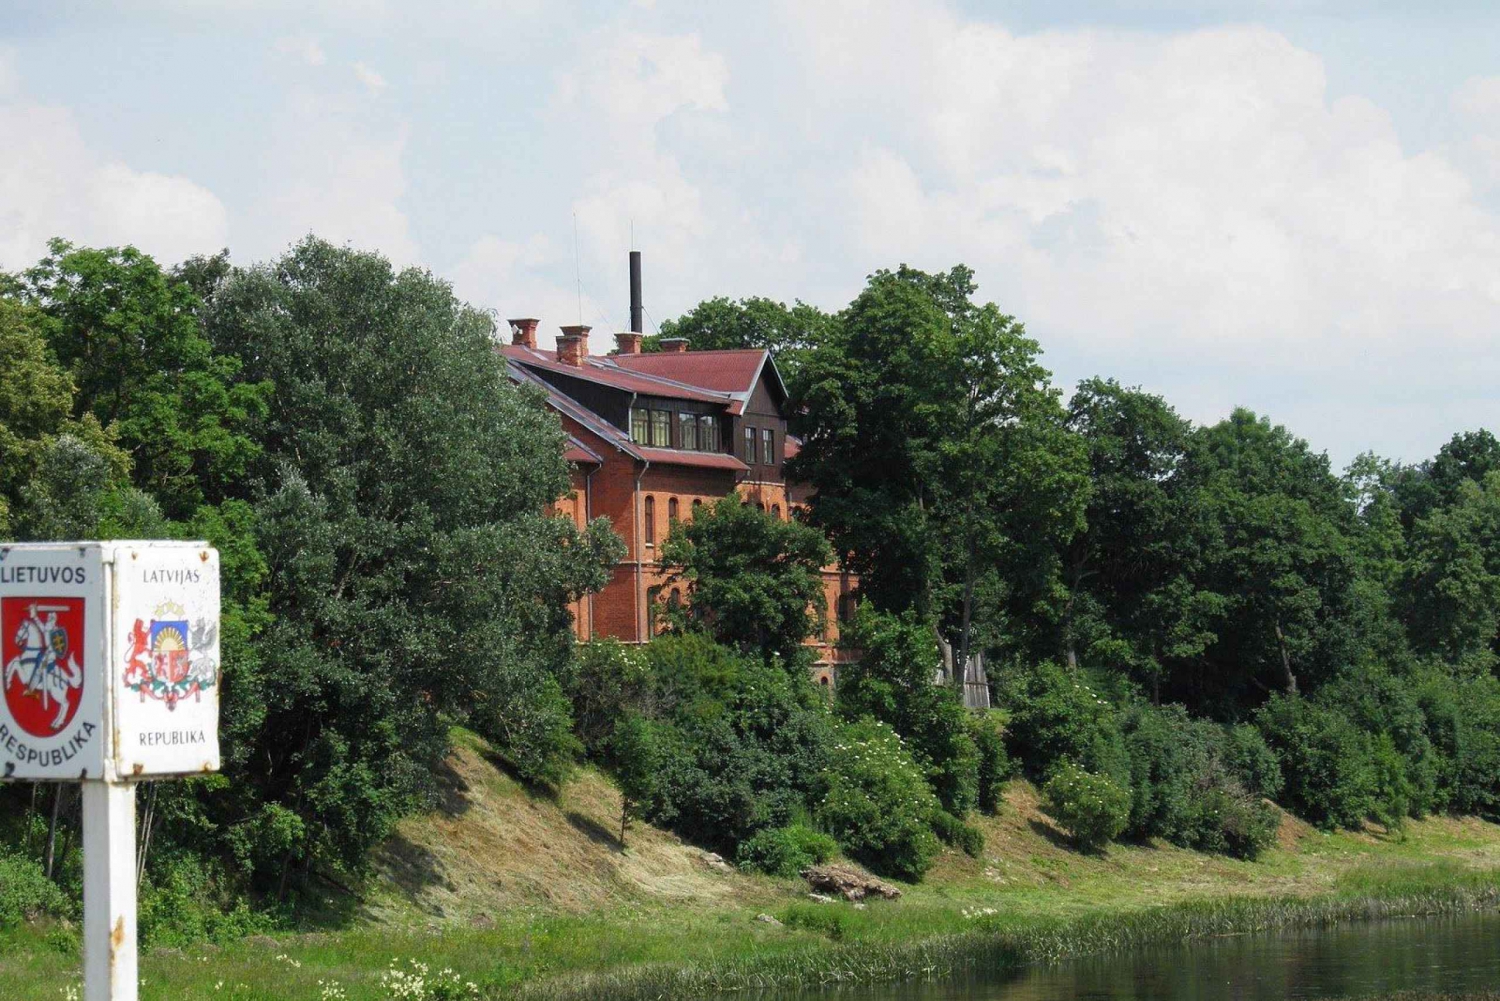 Kajak op de Lets-Litouwse grens, grootste duin in het binnenland